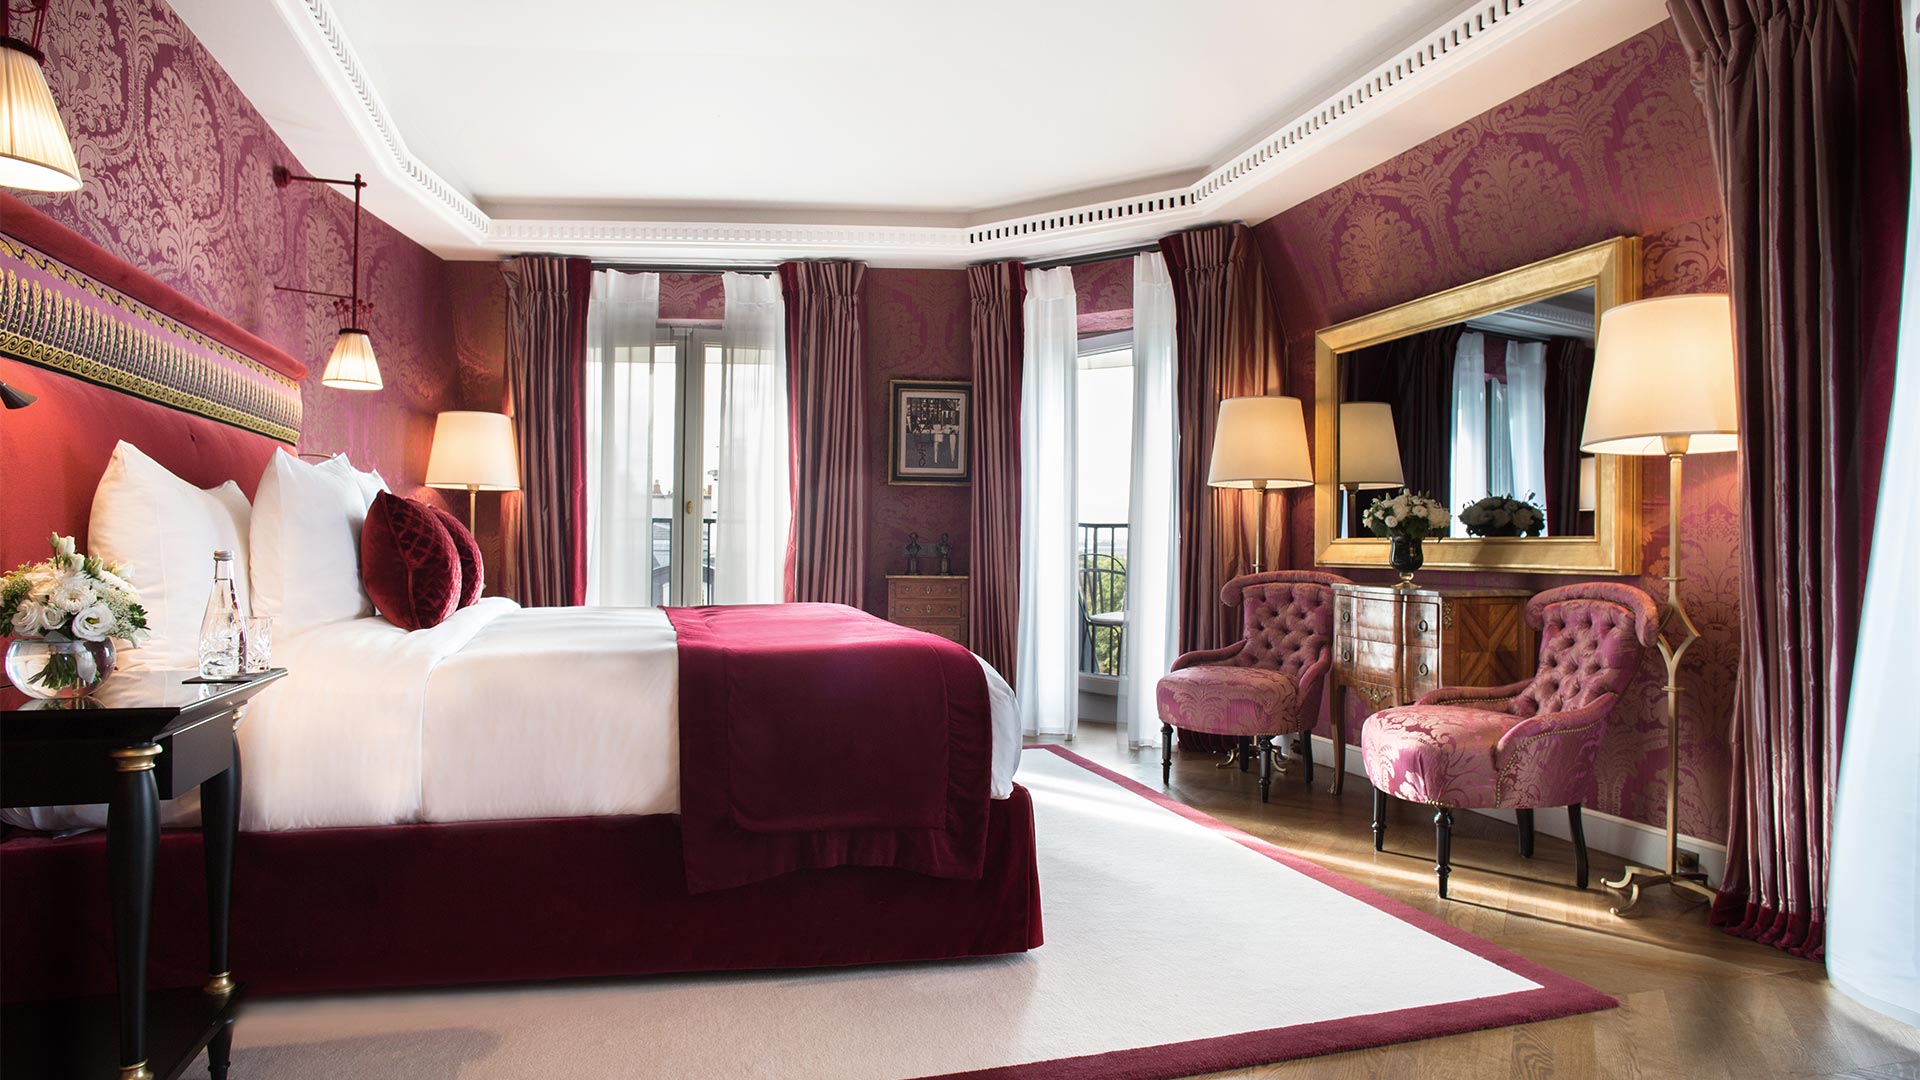 La Réserve Paris epitomizes the fusion of Parisian elegance with modern luxury